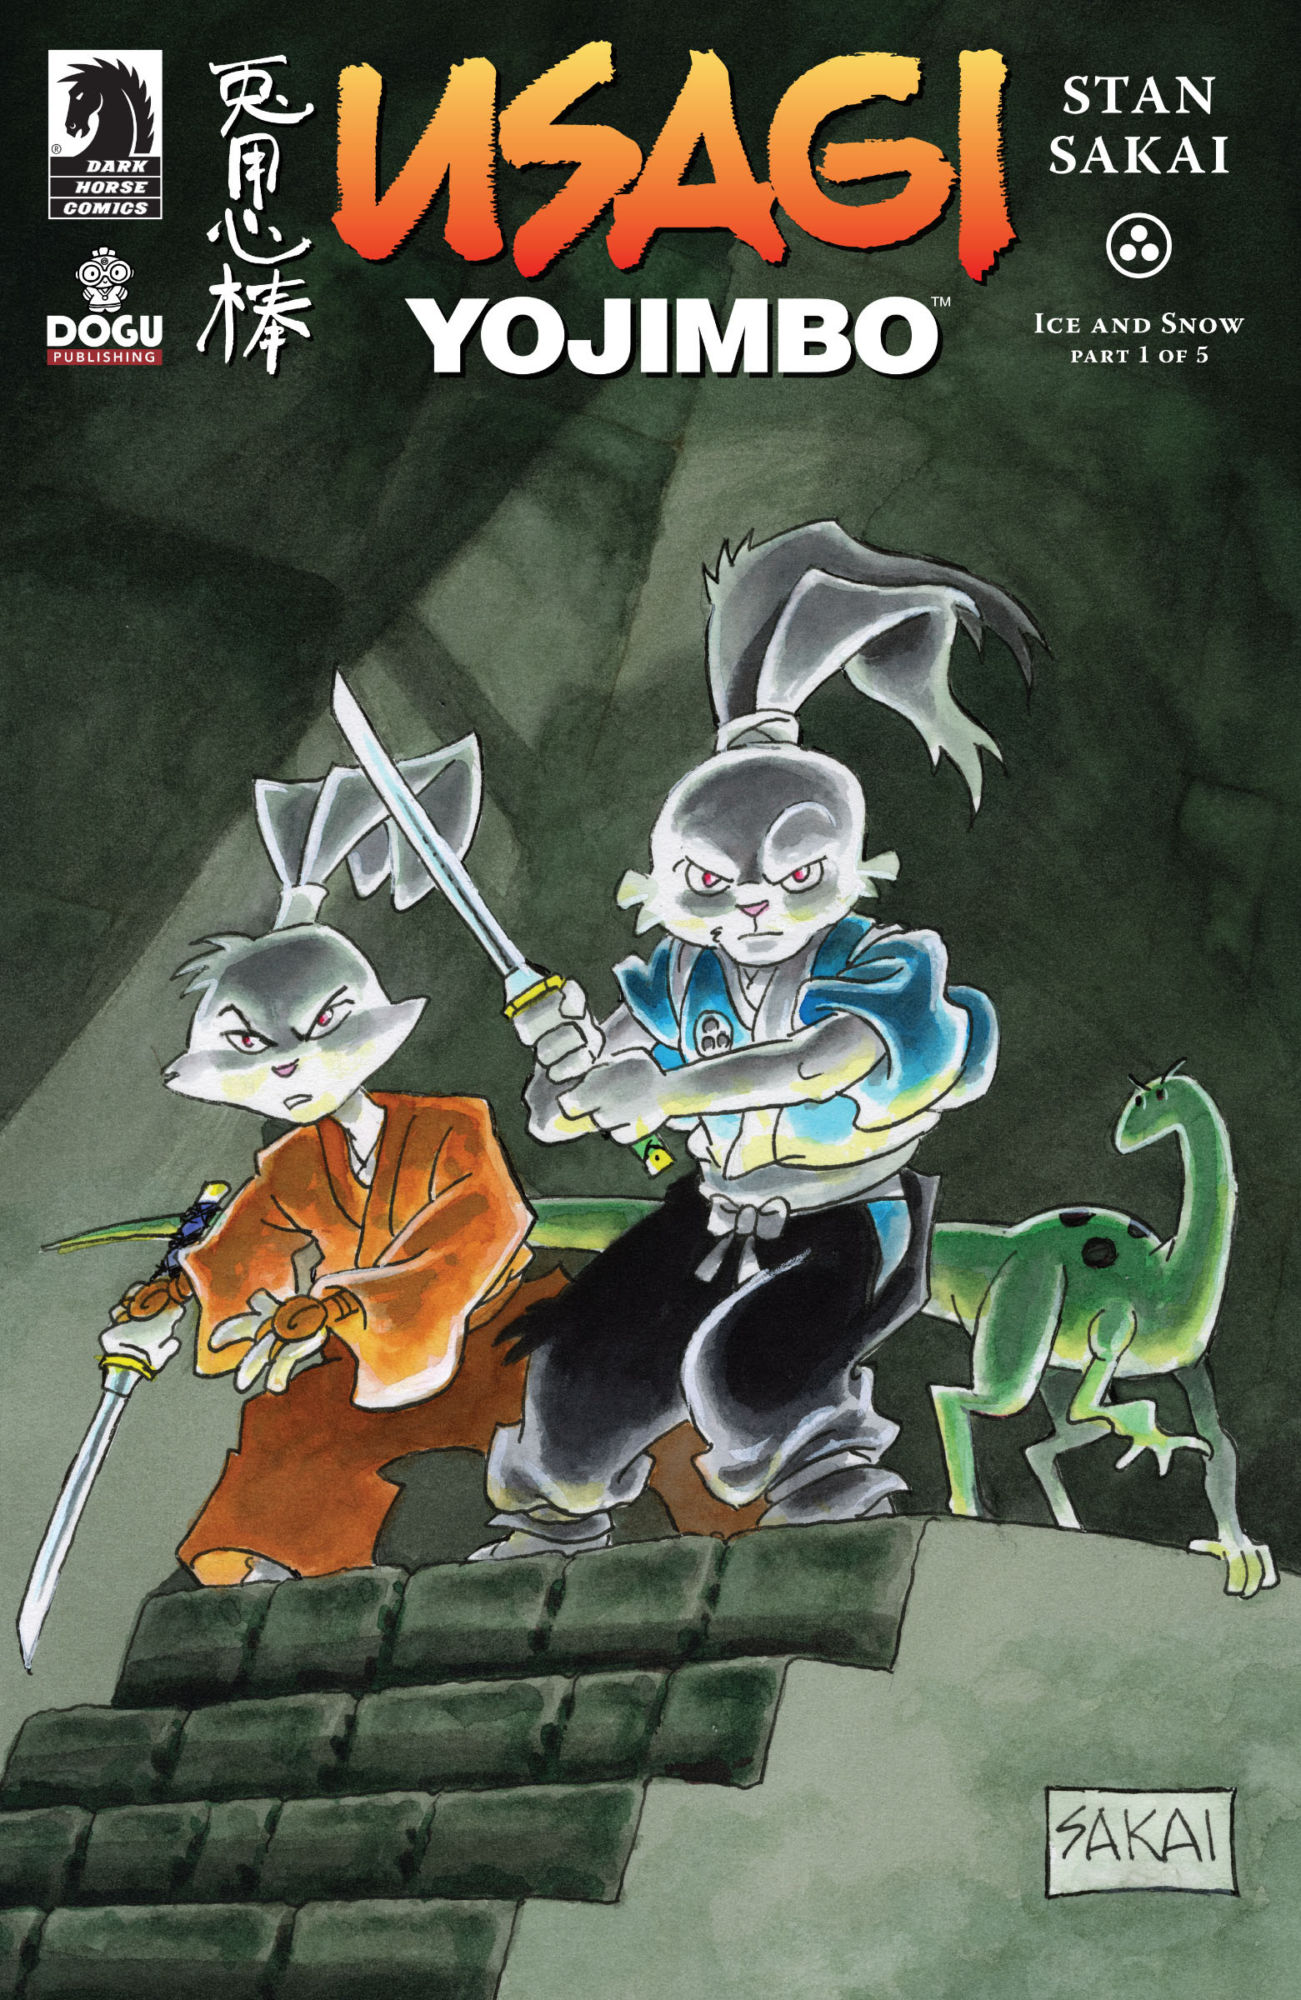 Usagi Yojimbo Saga Manga Volume 1 Review